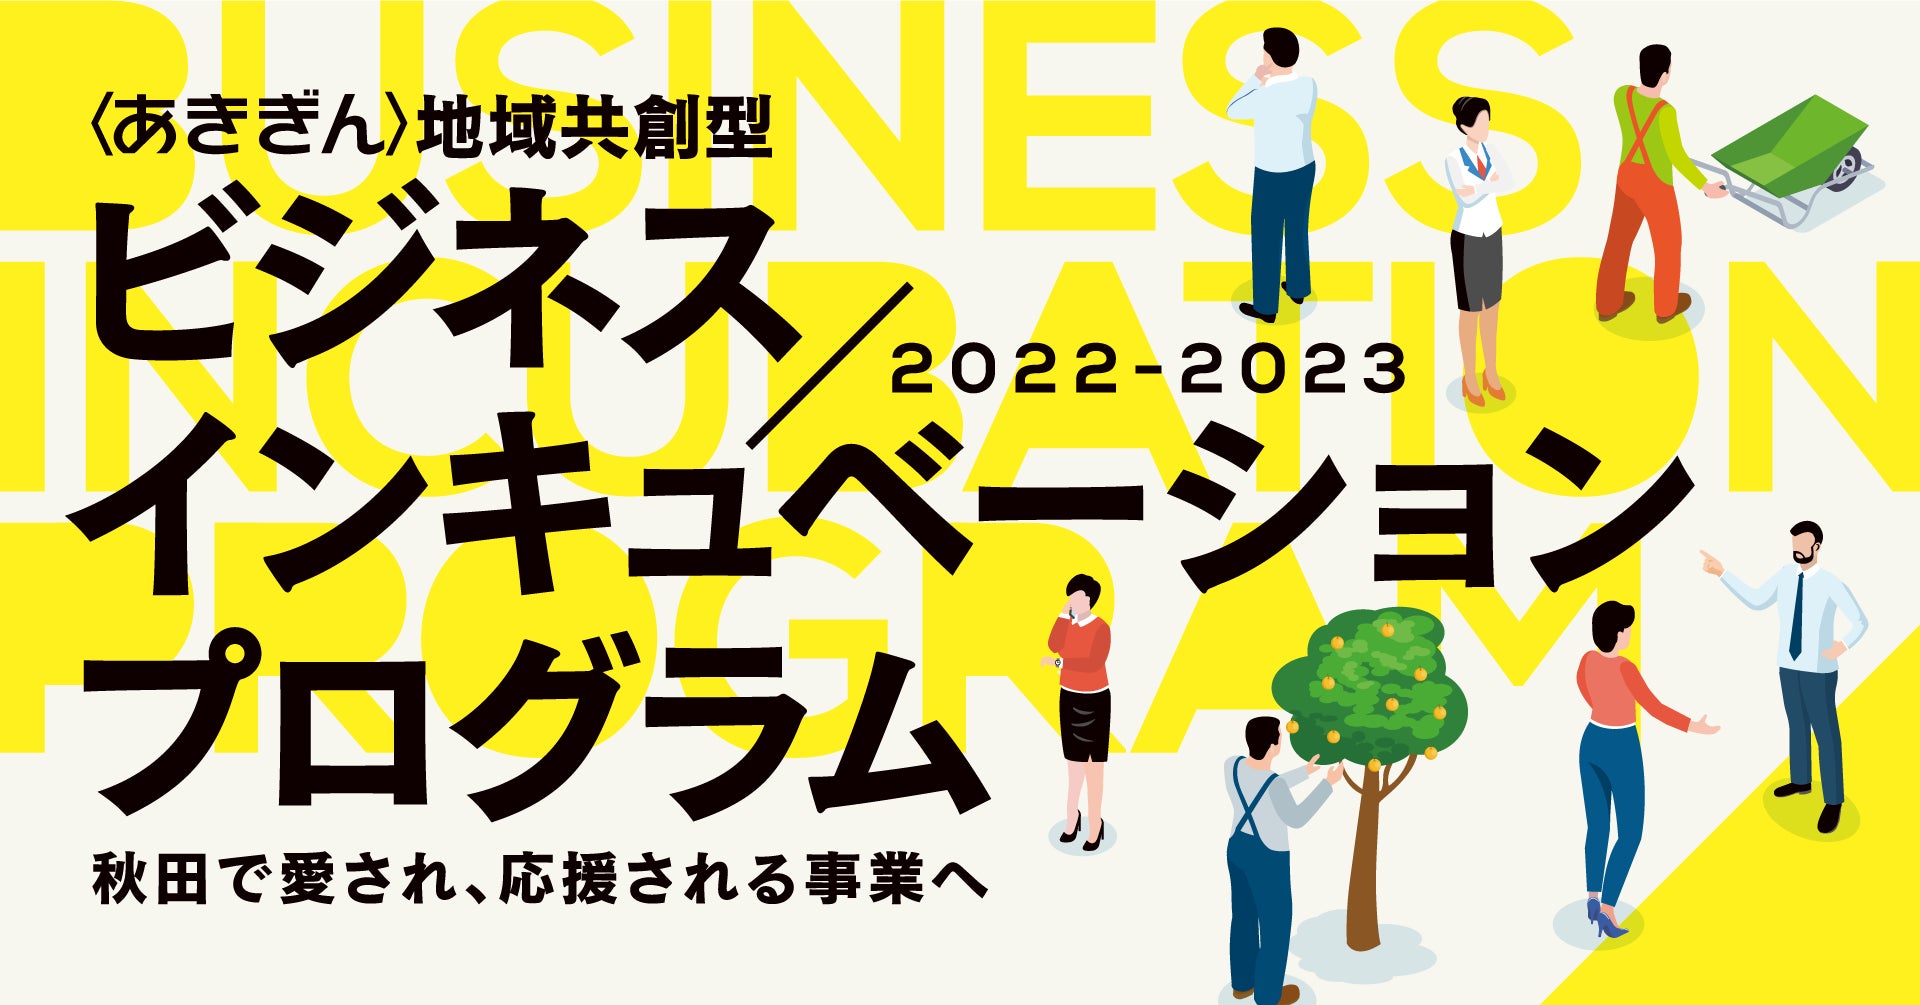 秋田銀行98支店のネットワークを事業連携に活用、起業家と県内事業者をつなげる 「〈あきぎん〉地域共創型ビジネスインキュベーションプログラム2022–2033」を開催